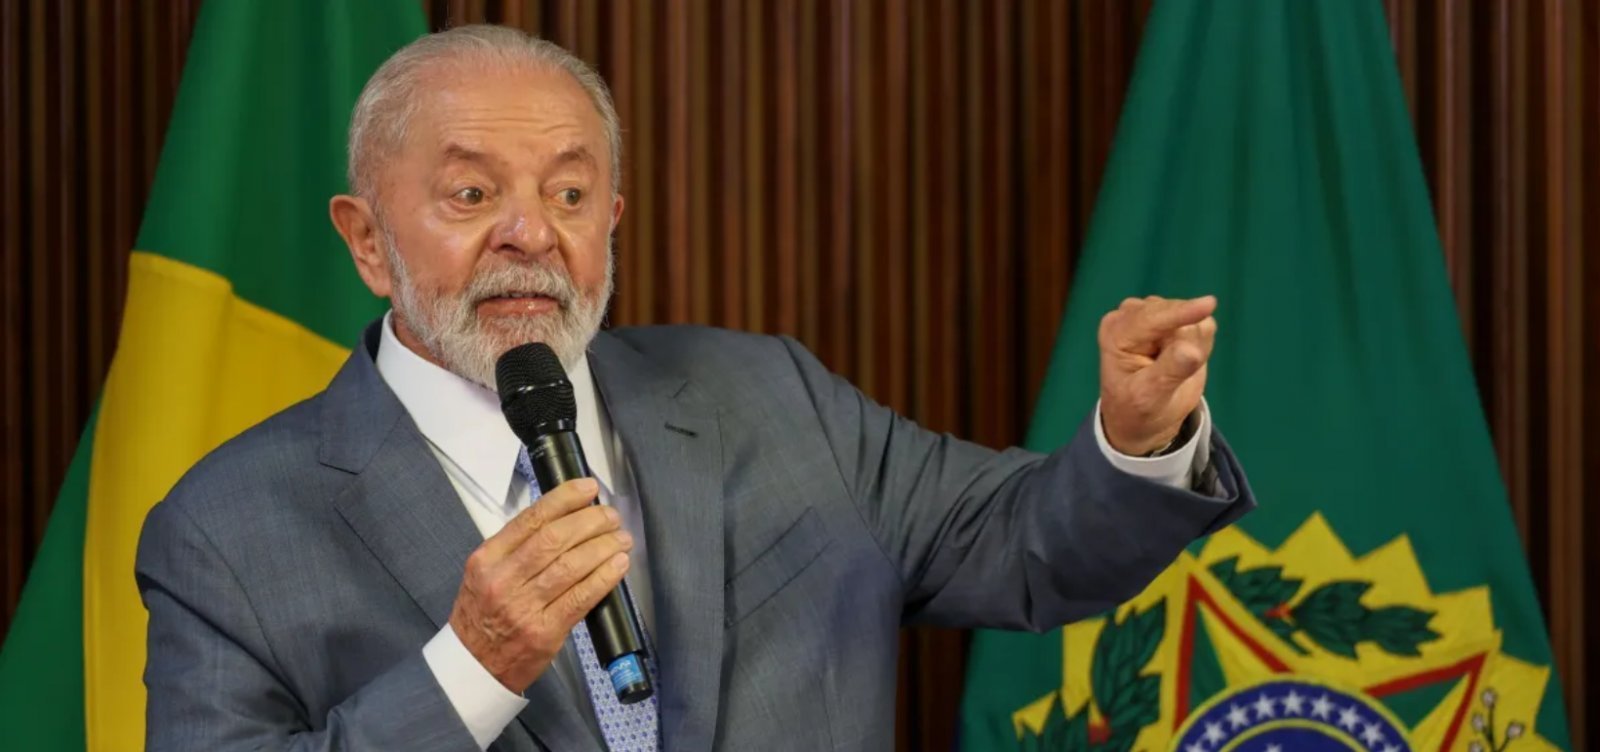 Educação é a única área do governo Lula com avaliação positiva maior que negativa, aponta pesquisa